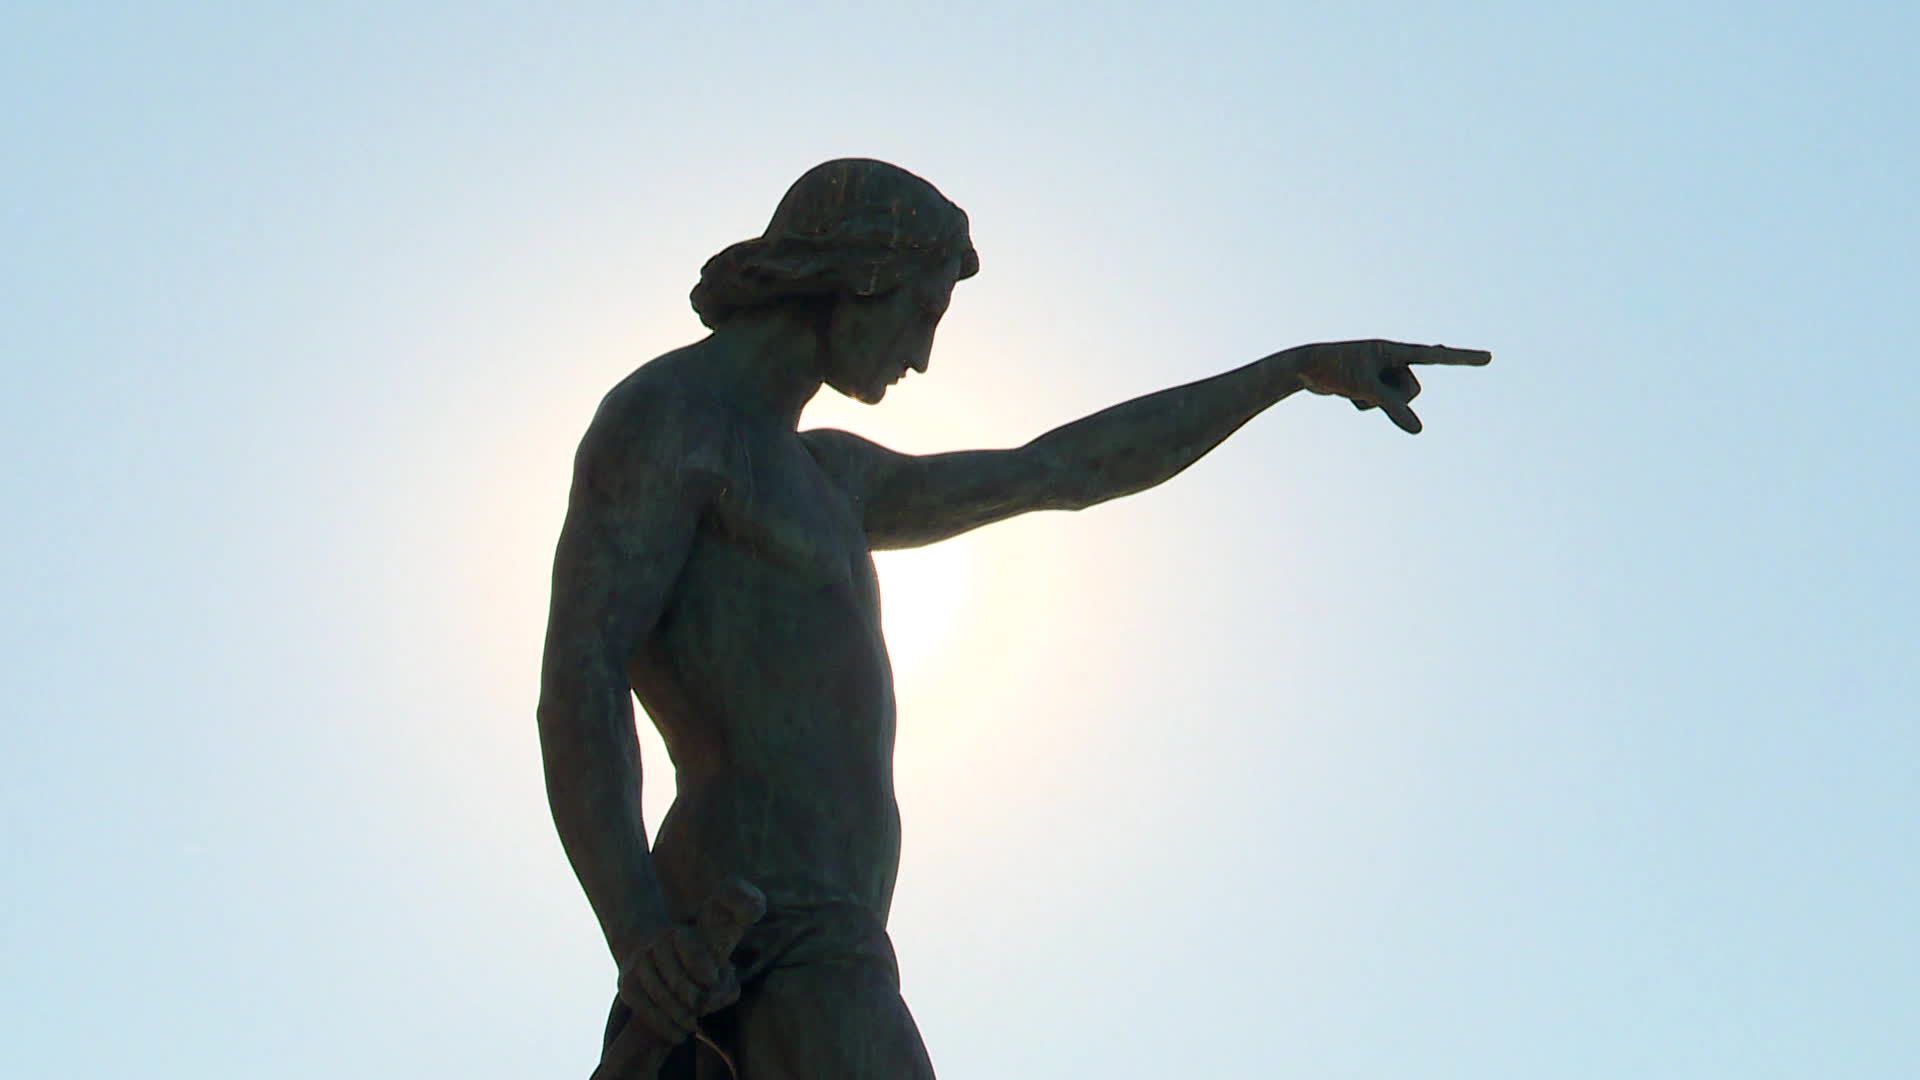 La statue de Cuverville a été érigée en hommage aux grands navigateurs de l’histoire. Elle est inaugurée sur le carré du port le 1er mai 1847